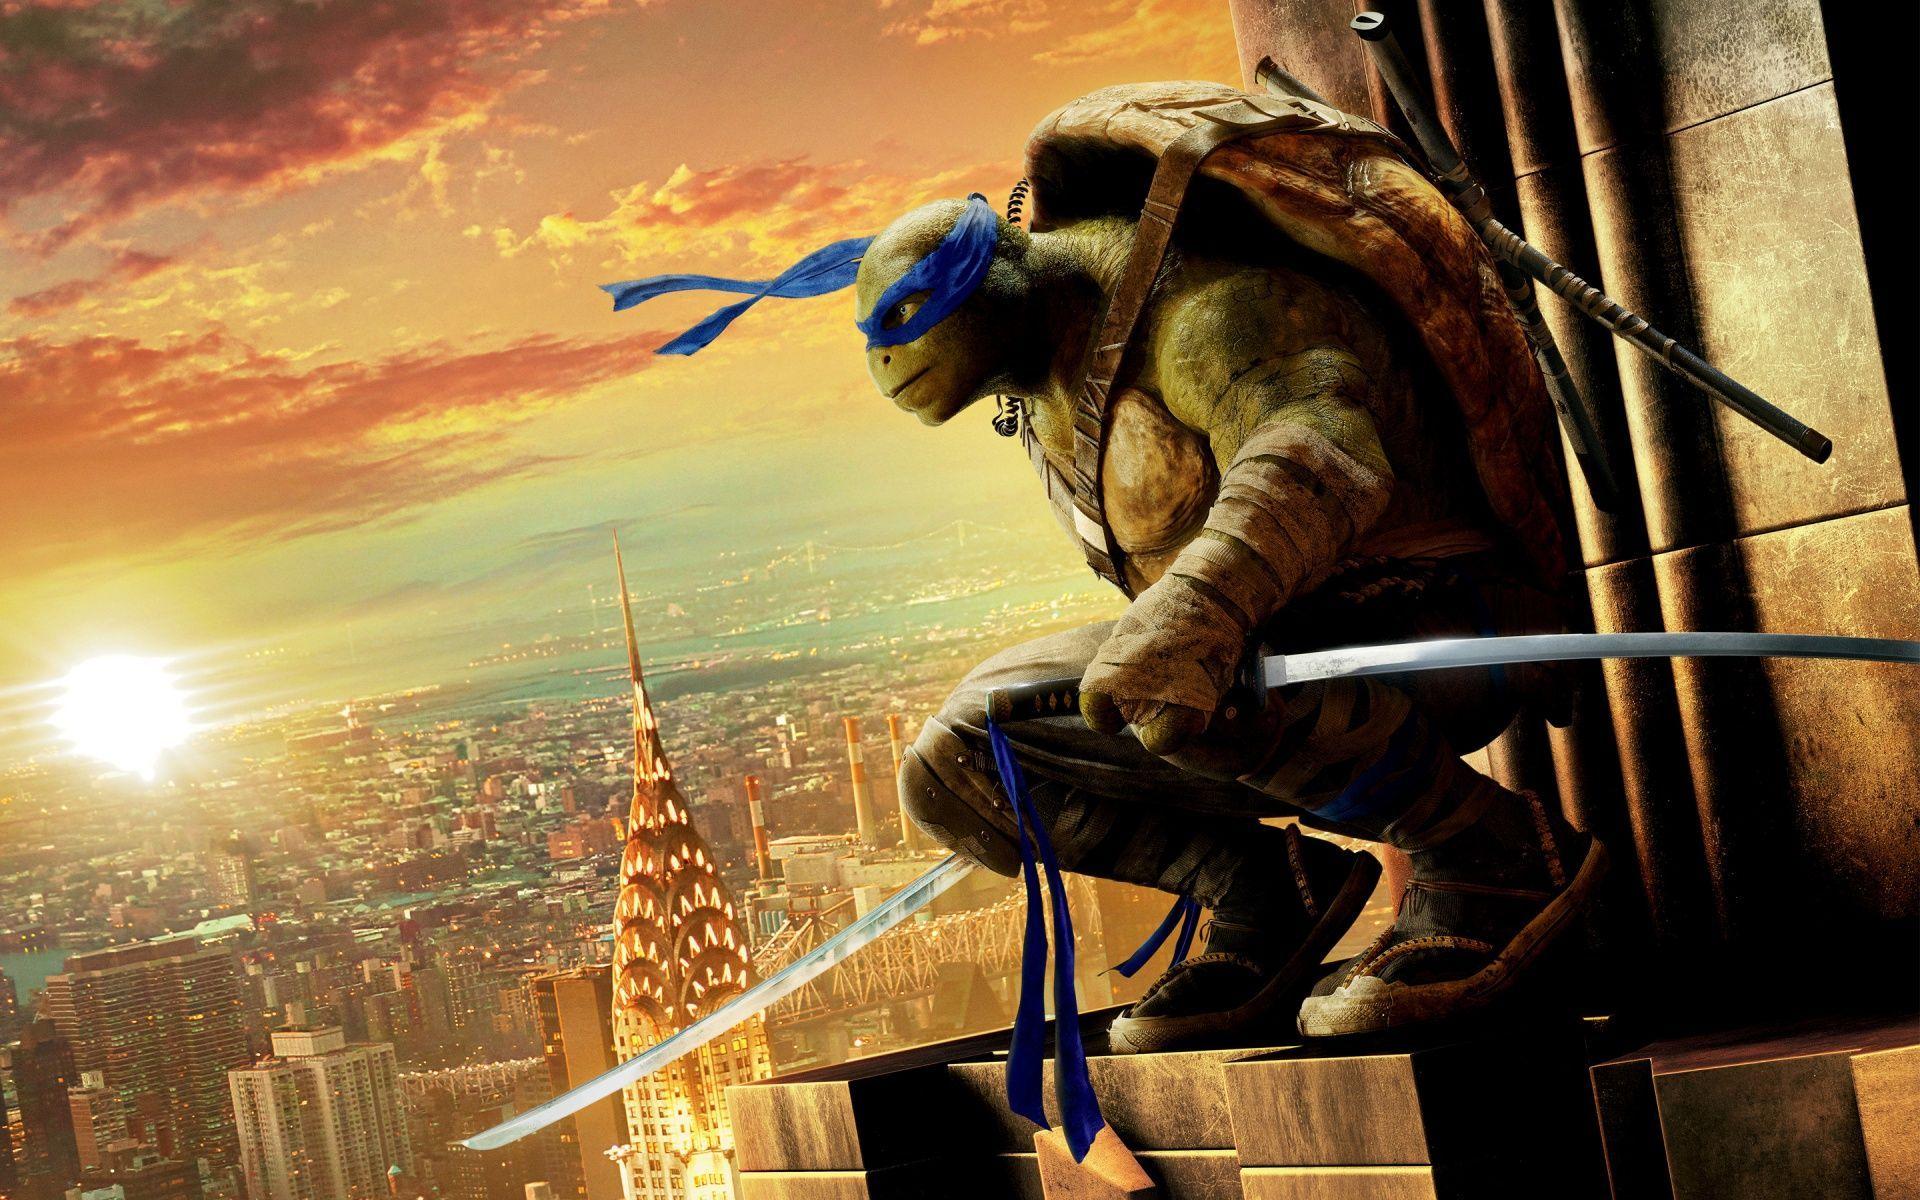 Leonardo Teenage Mutant Ninja Turtle Out of the Shadows